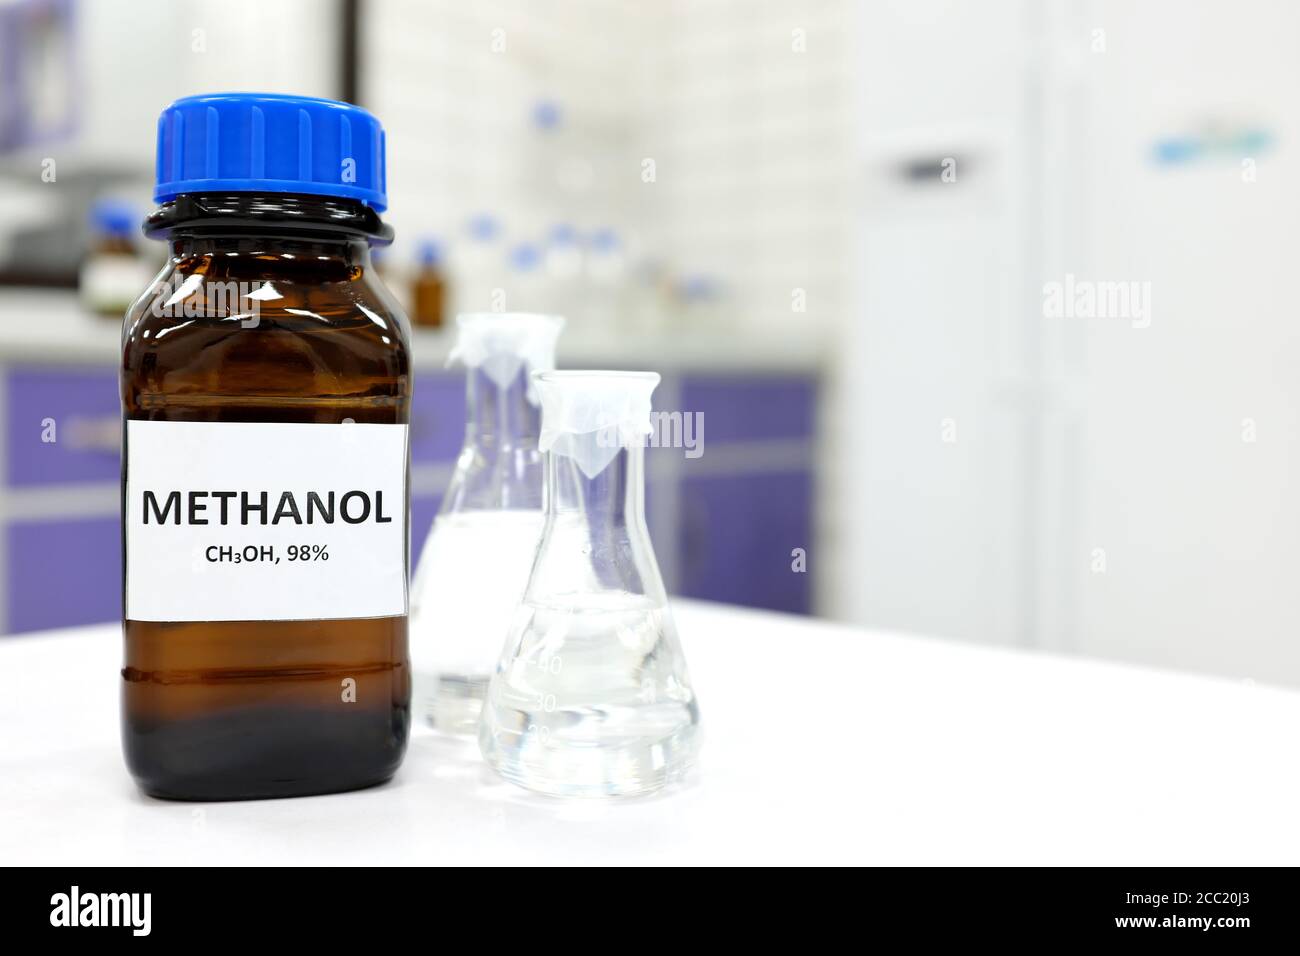 Foco selectivo de metanol en botella de vidrio ámbar marrón dentro de un laboratorio. Fondo borroso con espacio de copia. Foto de stock